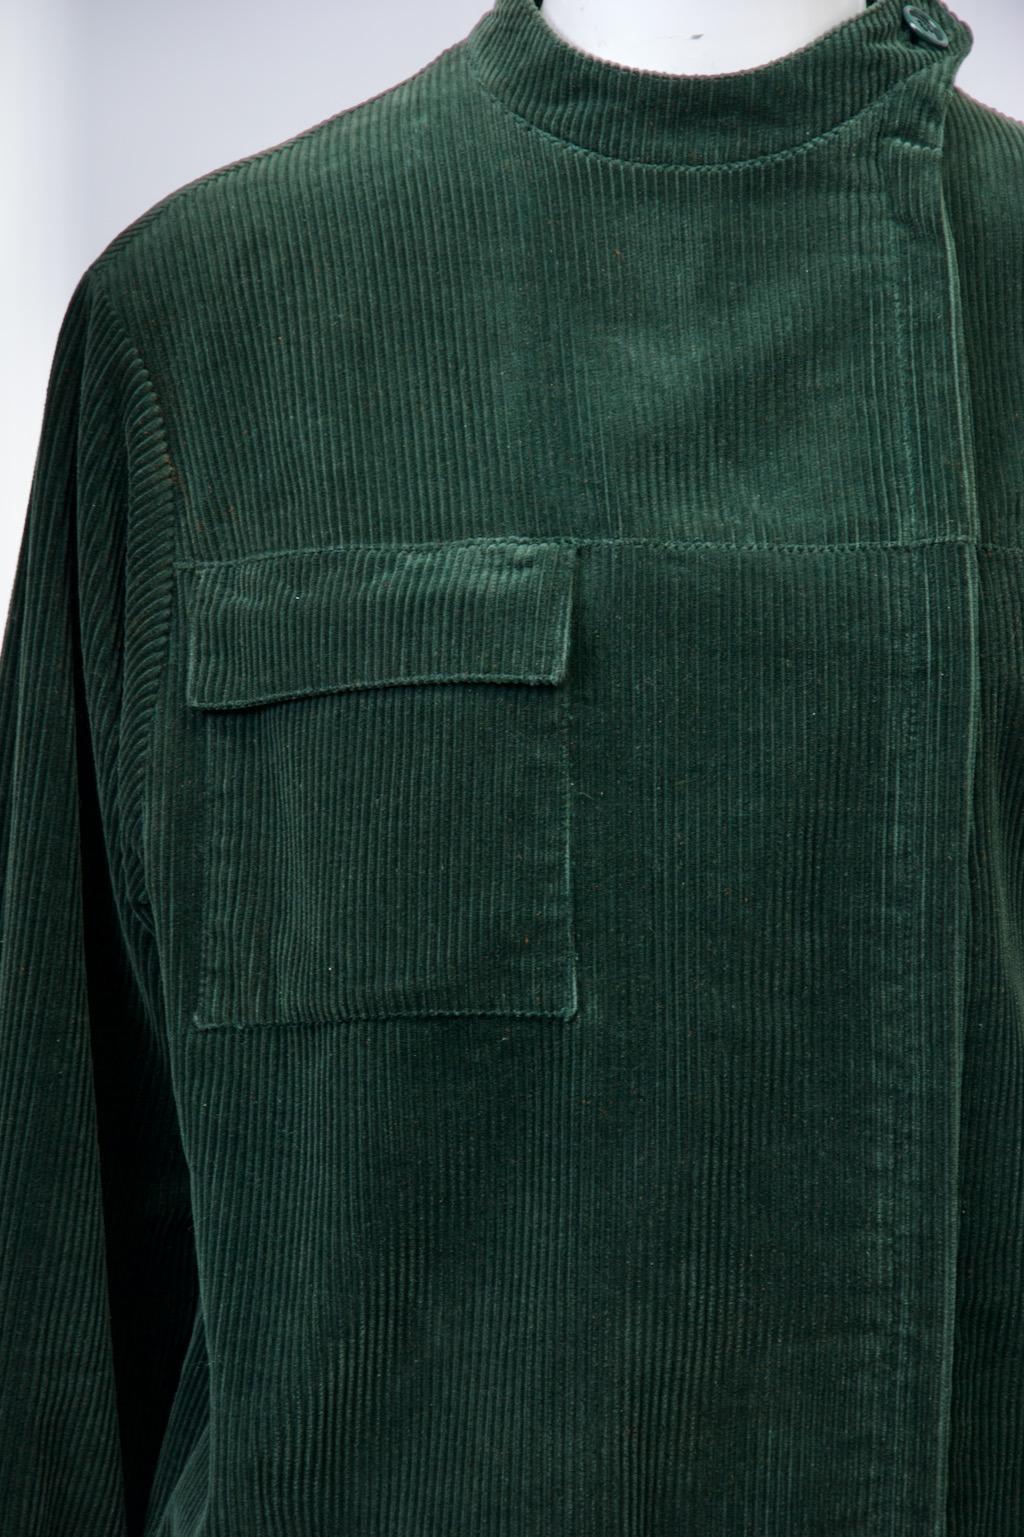 Die jagdgrüne Cordjacke von Franck Olivier hat einen dezentralen Reißverschluss, einen Mandarinenkragen und koordinierte Strickbündchen an Hüfte und Handgelenken. Eine aufgesetzte Tasche mit Patte oben rechts an der Jacke sorgt für zusätzliche